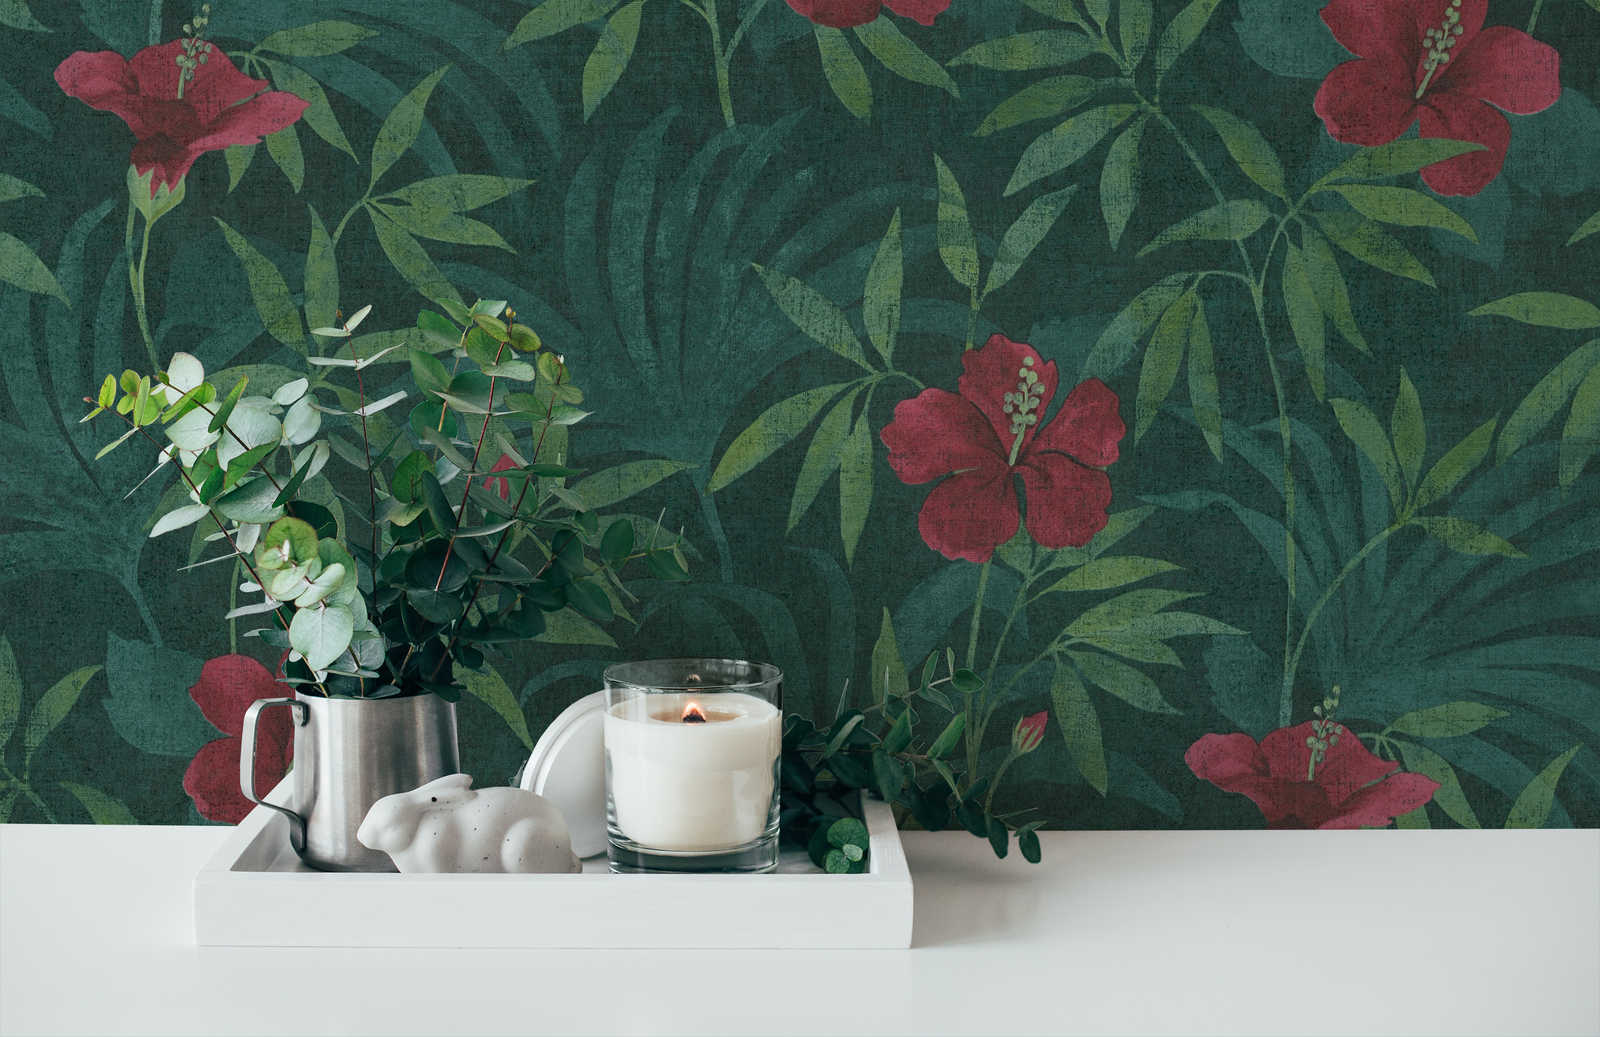             Jungle behang groene jungle & hibiscus bloemen - groen, rood
        